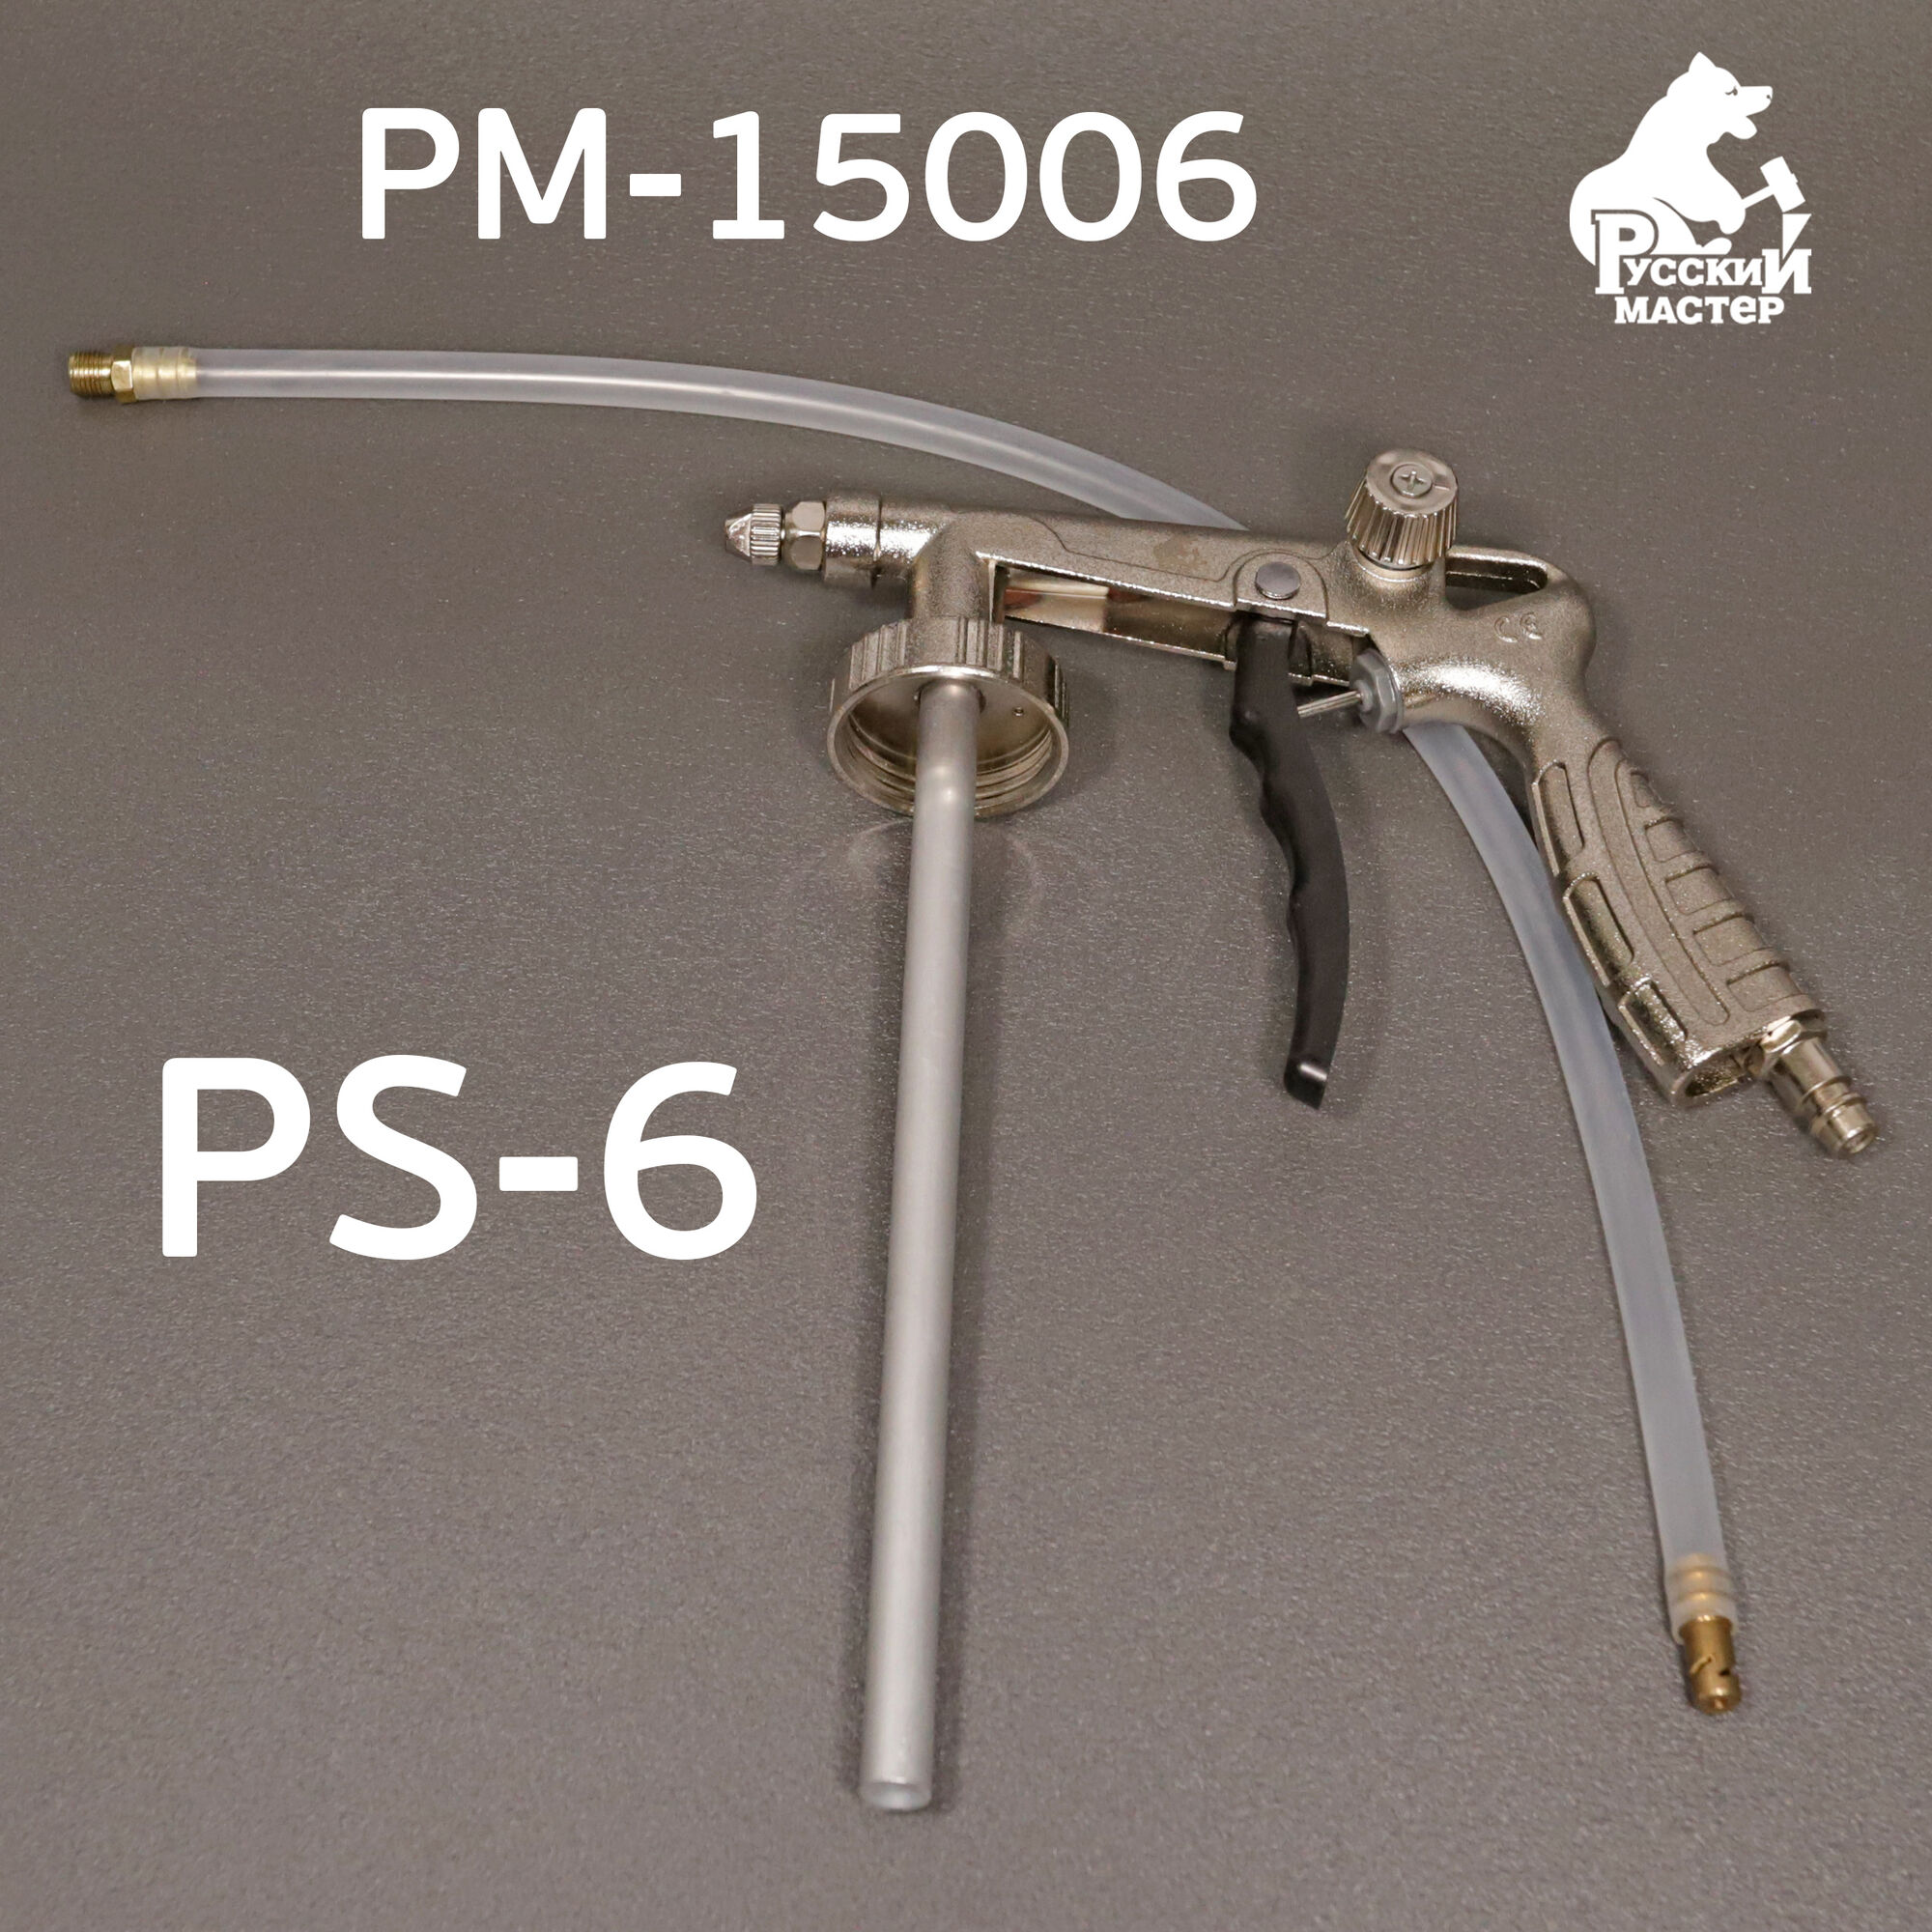 Пистолет для антигравия PS-6 мовильный шланг, регулировка факела, Русский Мастер РМ-15006